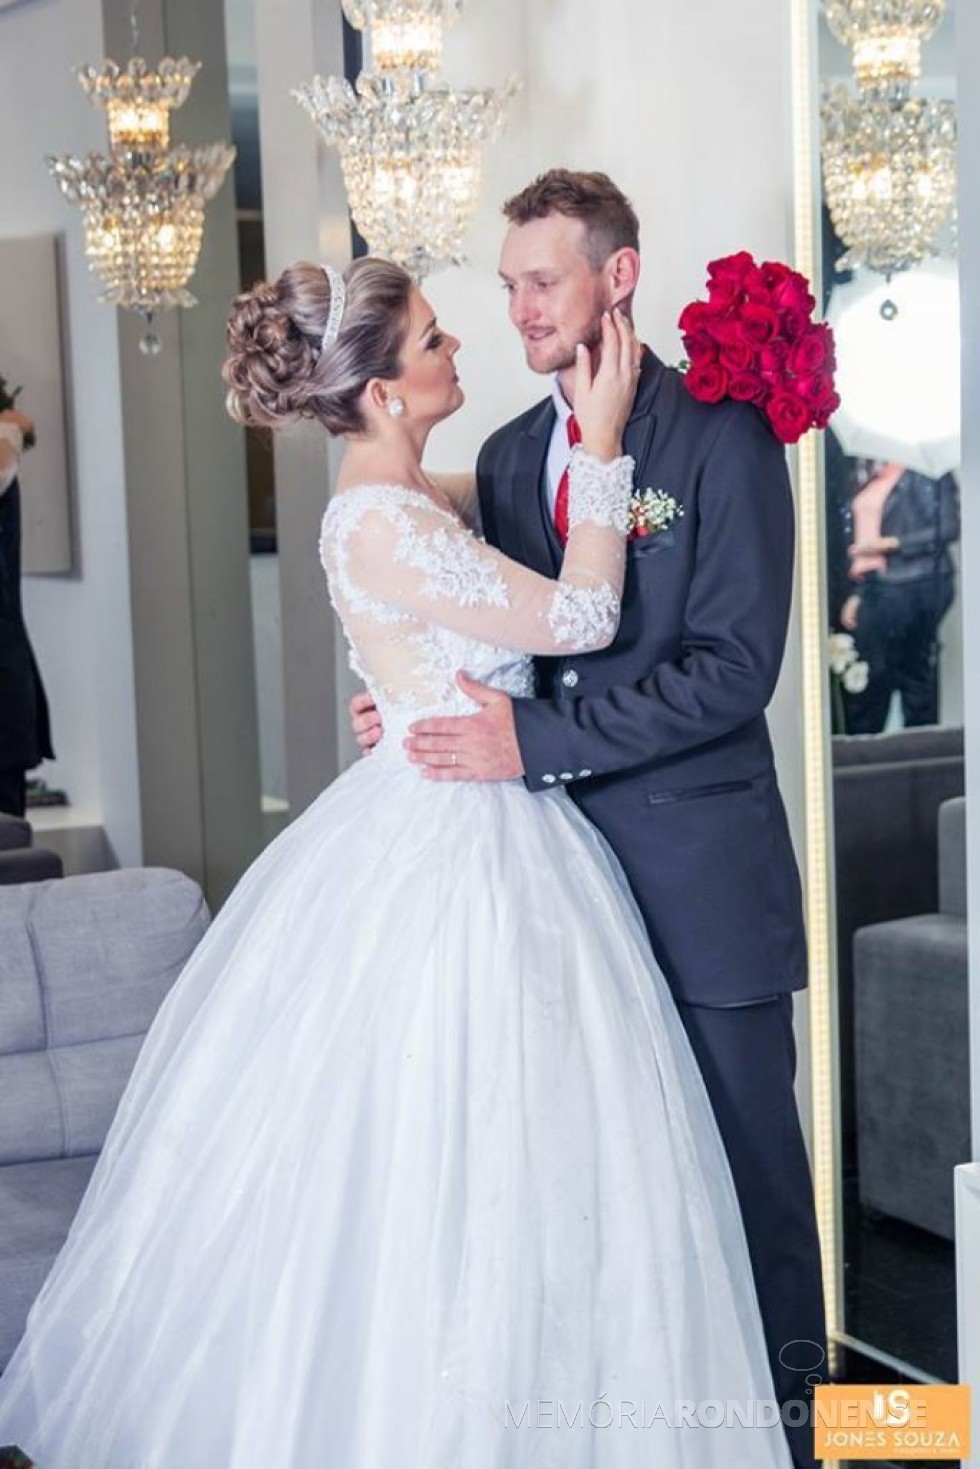 Noivos Carlini Kemper e Fernando Alflen que casaram em agosto de 2017.
Imagem: Acervo do casal - FOTO 15 - 